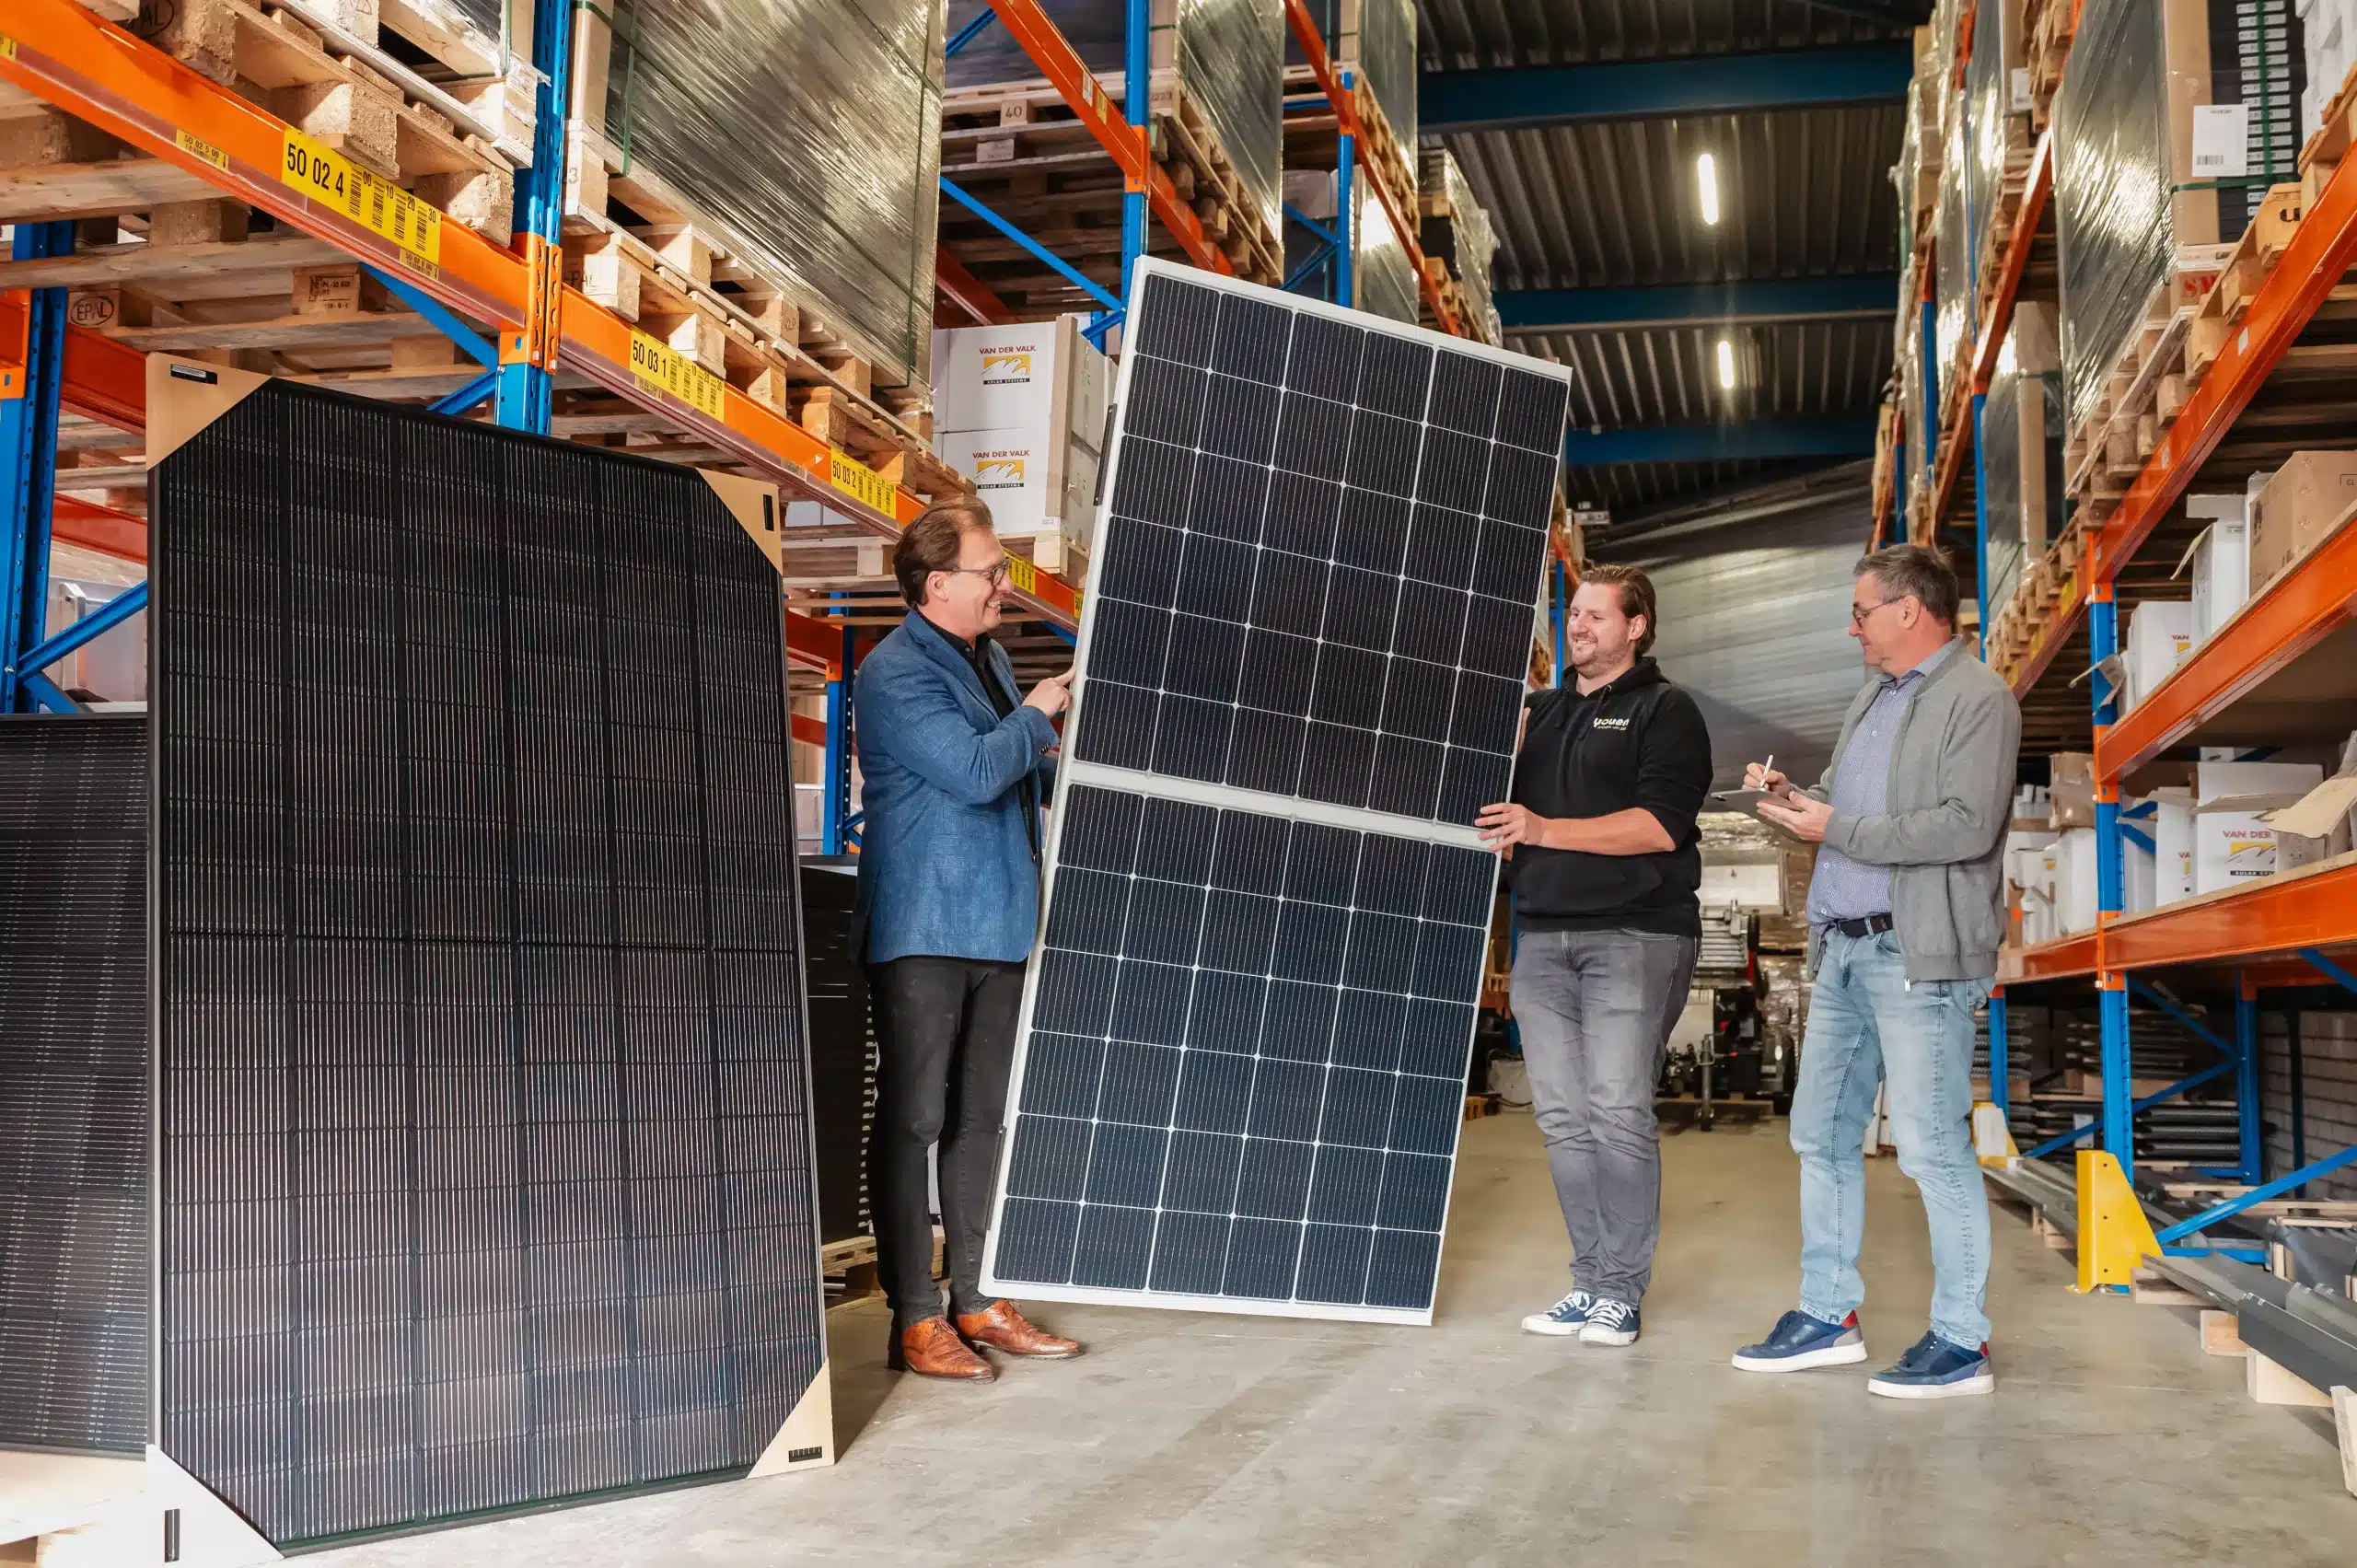 Drie professionals bespreken zonnepanelen in een magazijn met op de achtergrond schappen gevuld met zonnepanelen.